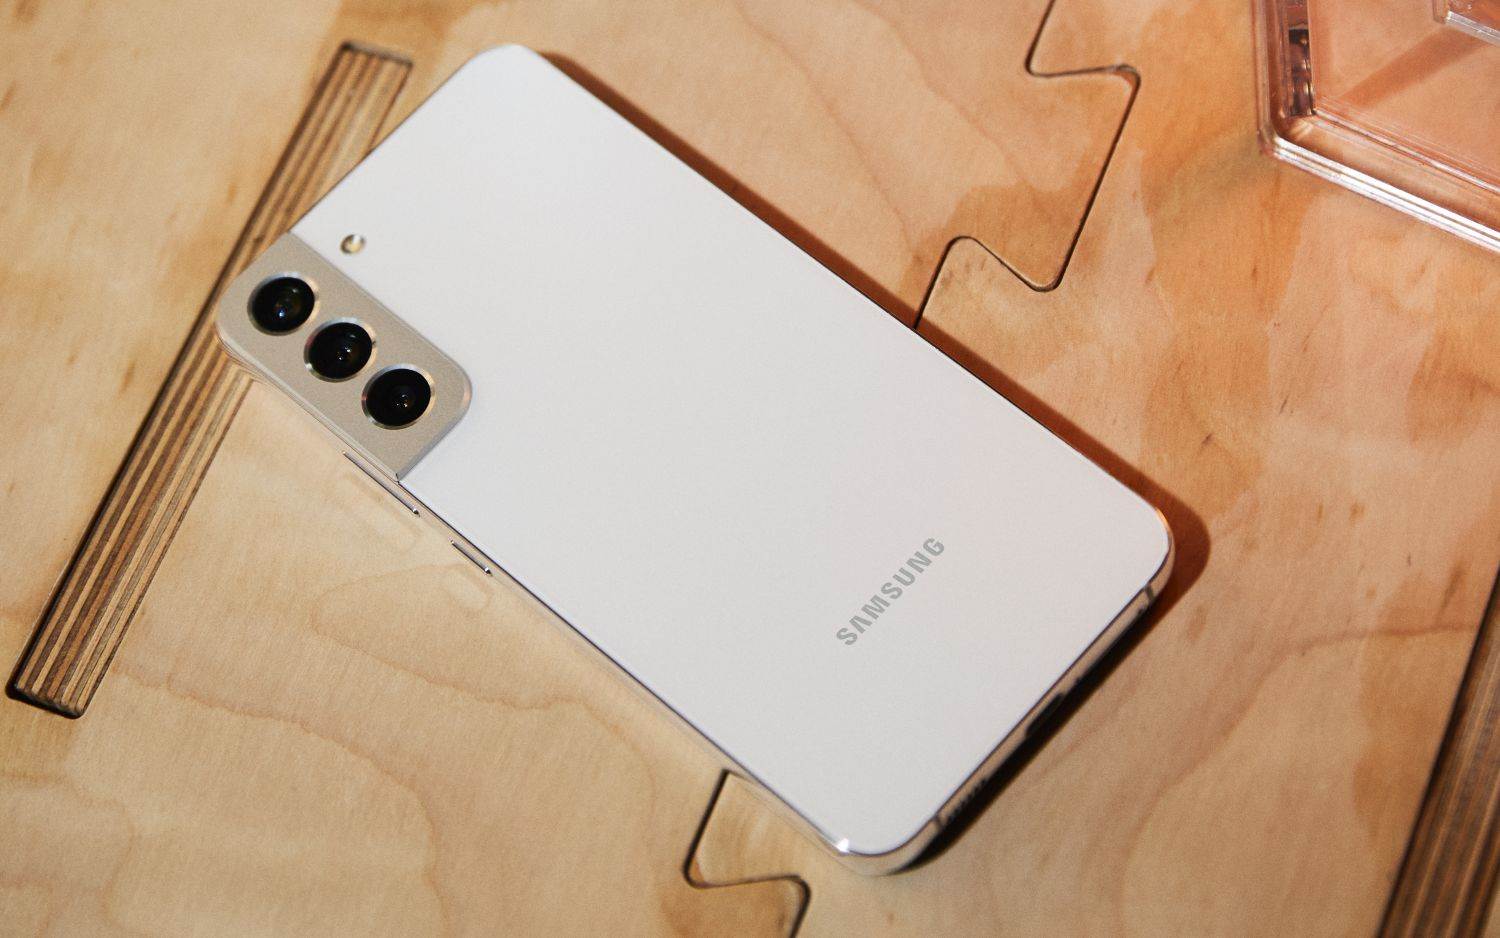  Samsung Galaxy S22+.jpg 